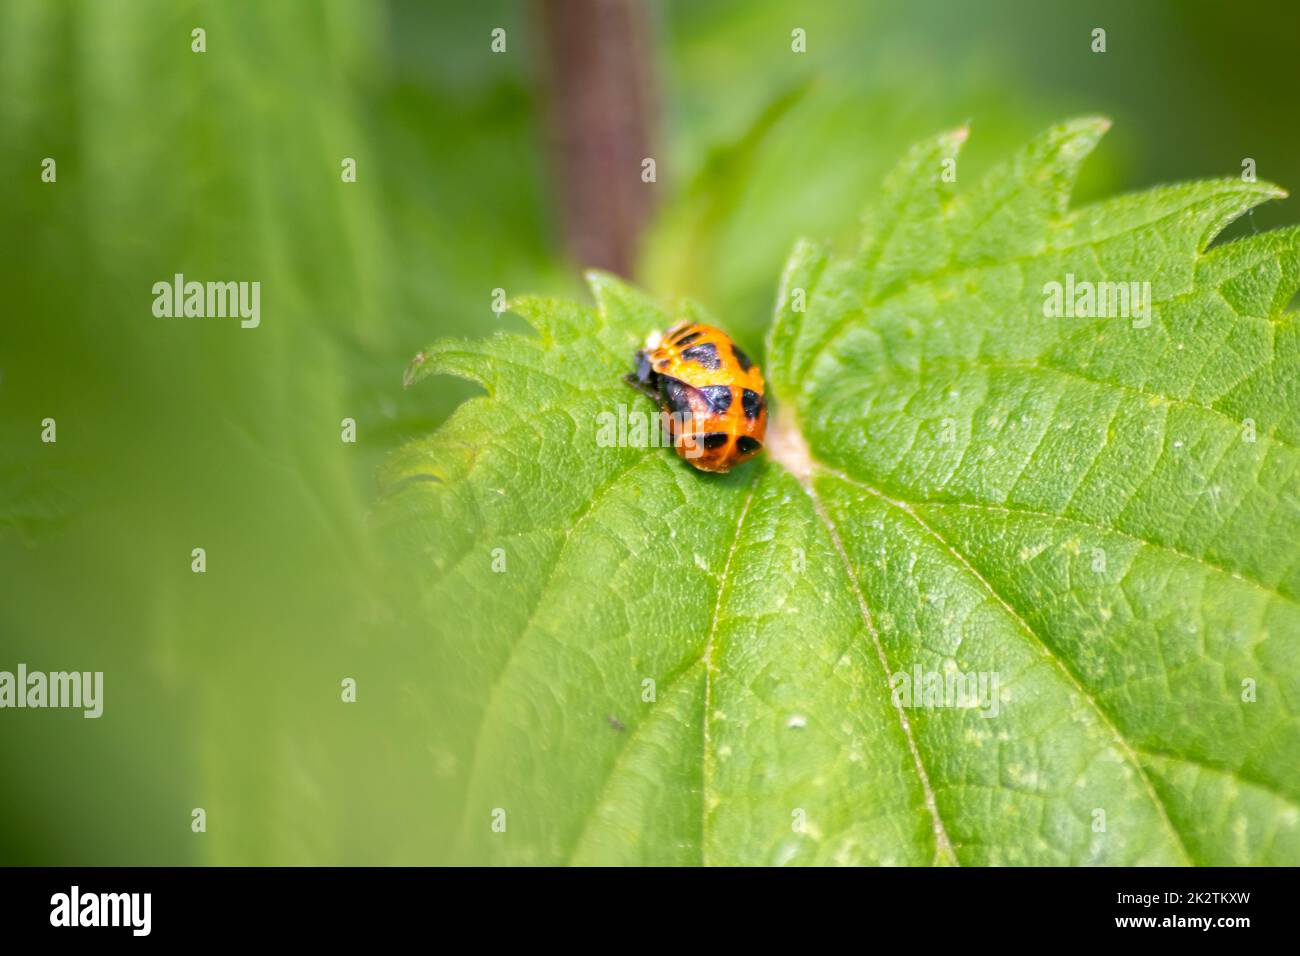 Nuovo nato ladybug eclosing verde foglia interruttori da larva a ladybug scarabeo con puntini neri ali rosse mostrano nuovo nato fortunato talisman armonia naturale controllo peste in agricoltura Foto Stock